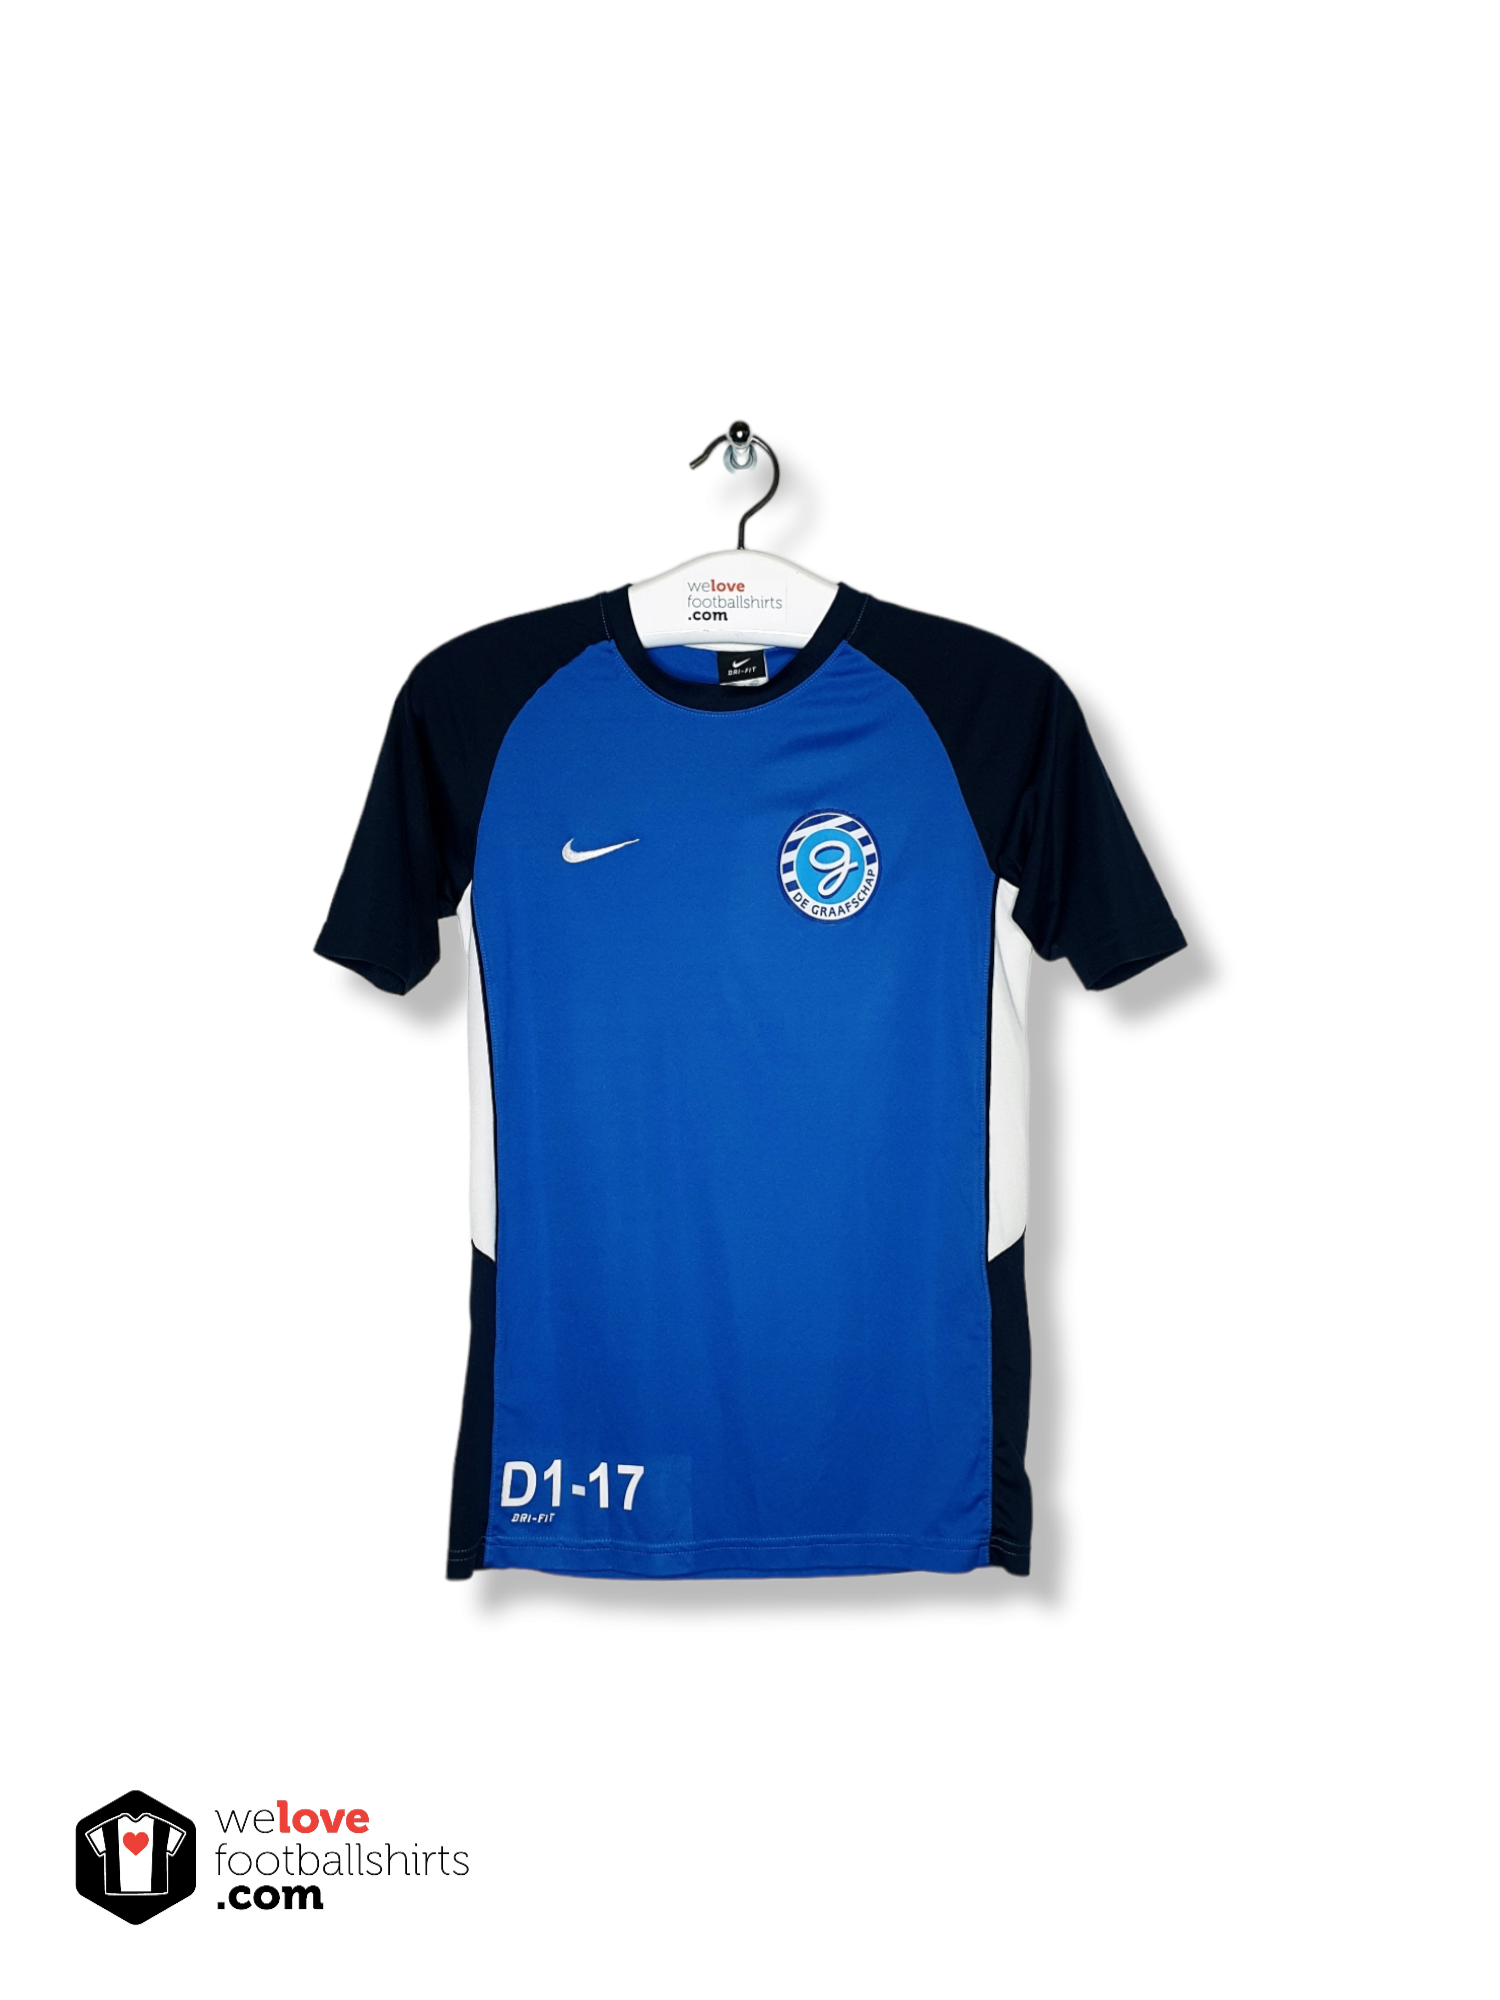 nood lading Kabelbaan Nike training shirt De Graafschap 2016/17 - Welovefootballshirts.com